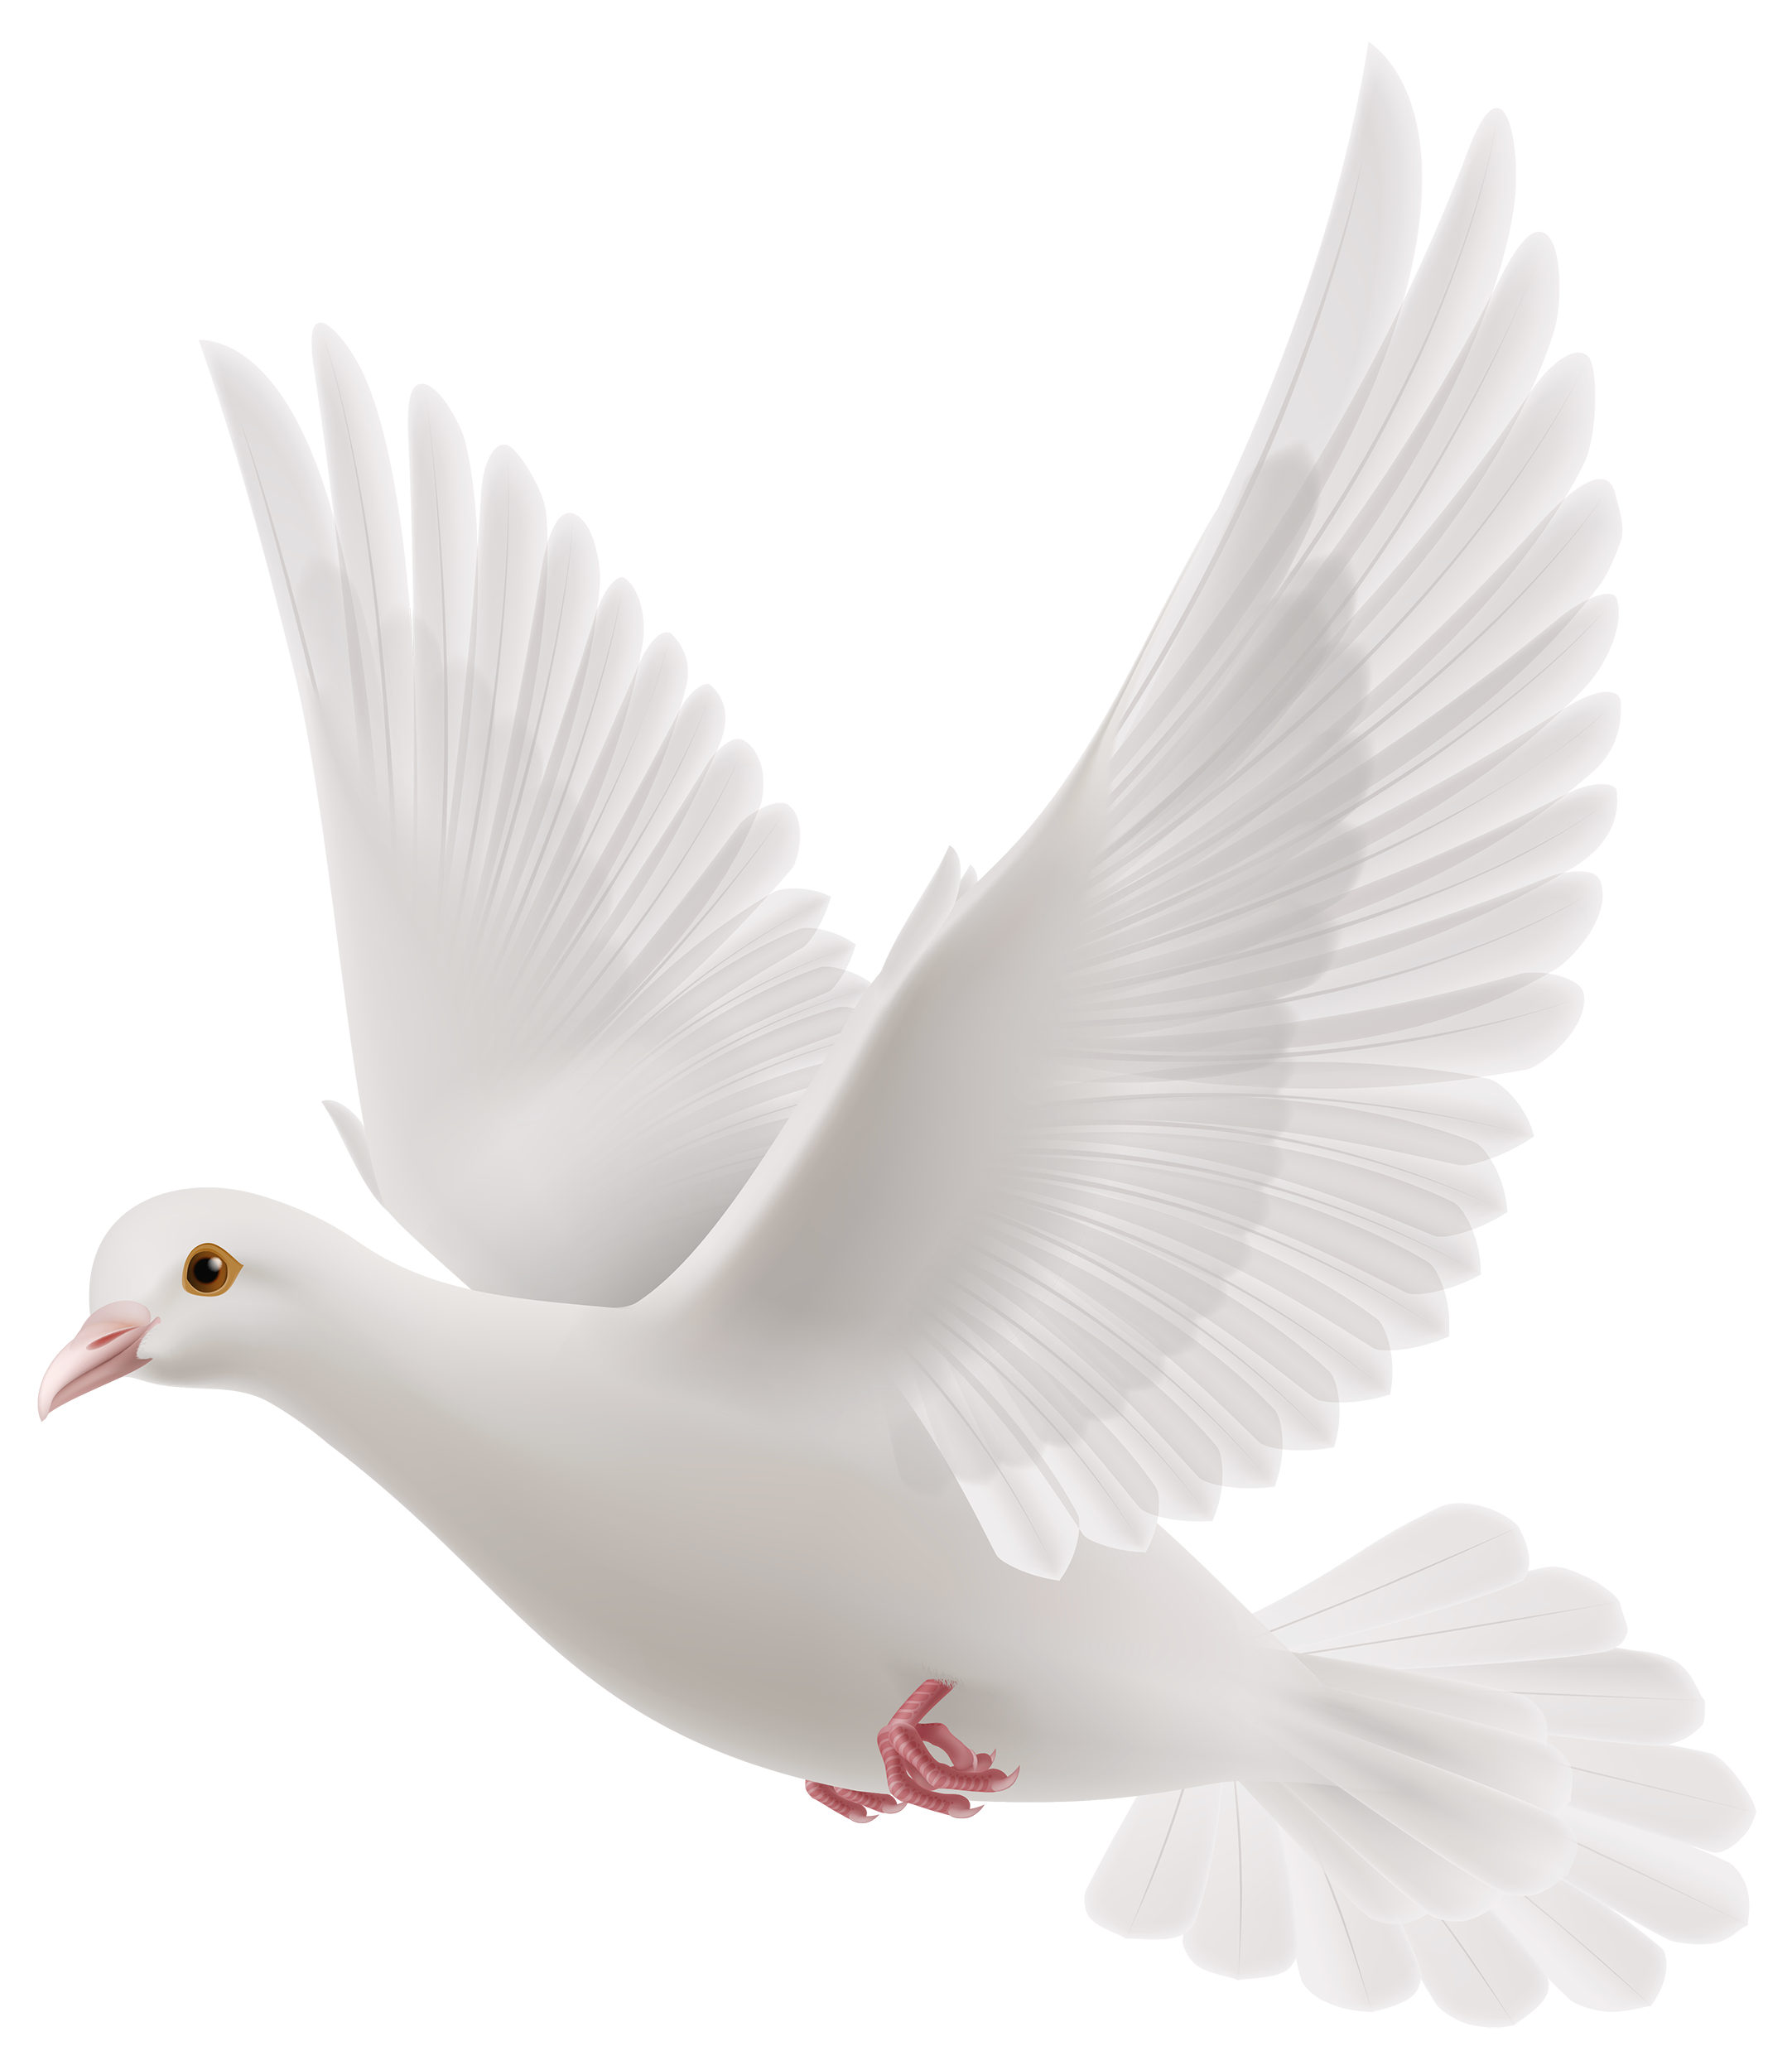 Rock Dove Columbidae Bird Snowy Pigeons Png Download 21642500